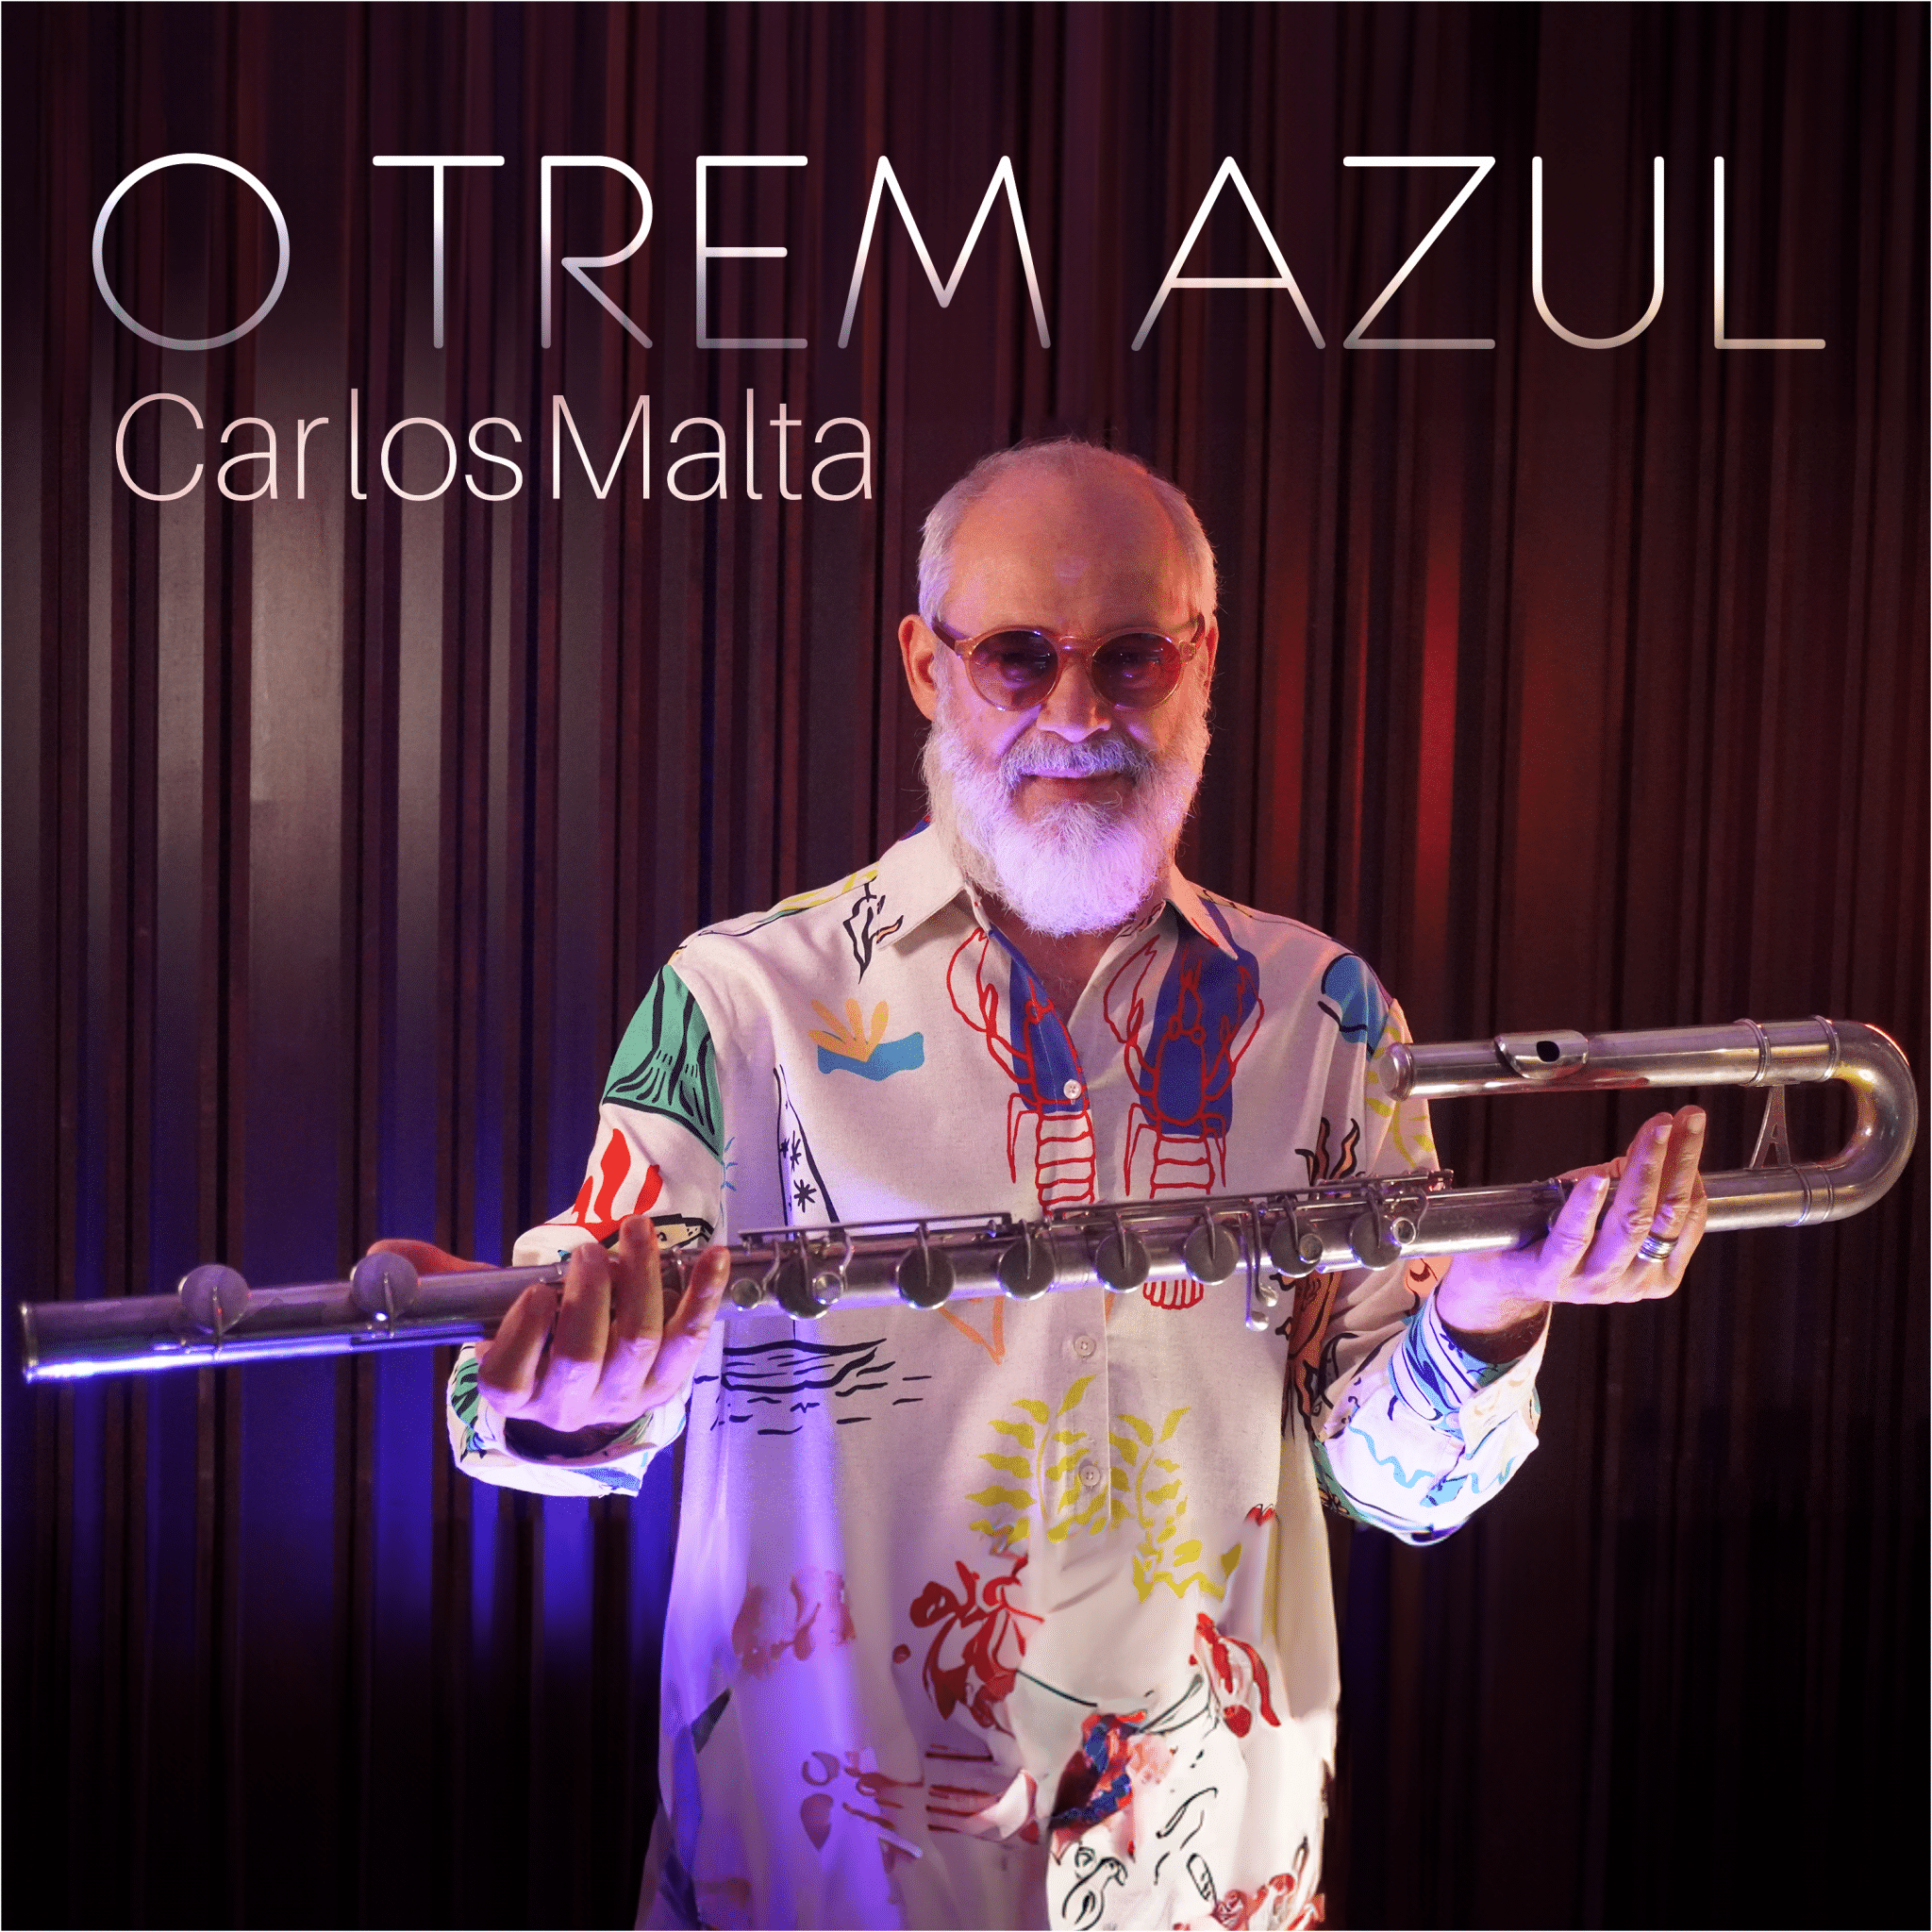 revistaprosaversoearte.com - O Multi-instrumentista Carlos Malta lança o single 'O Trem Azul'